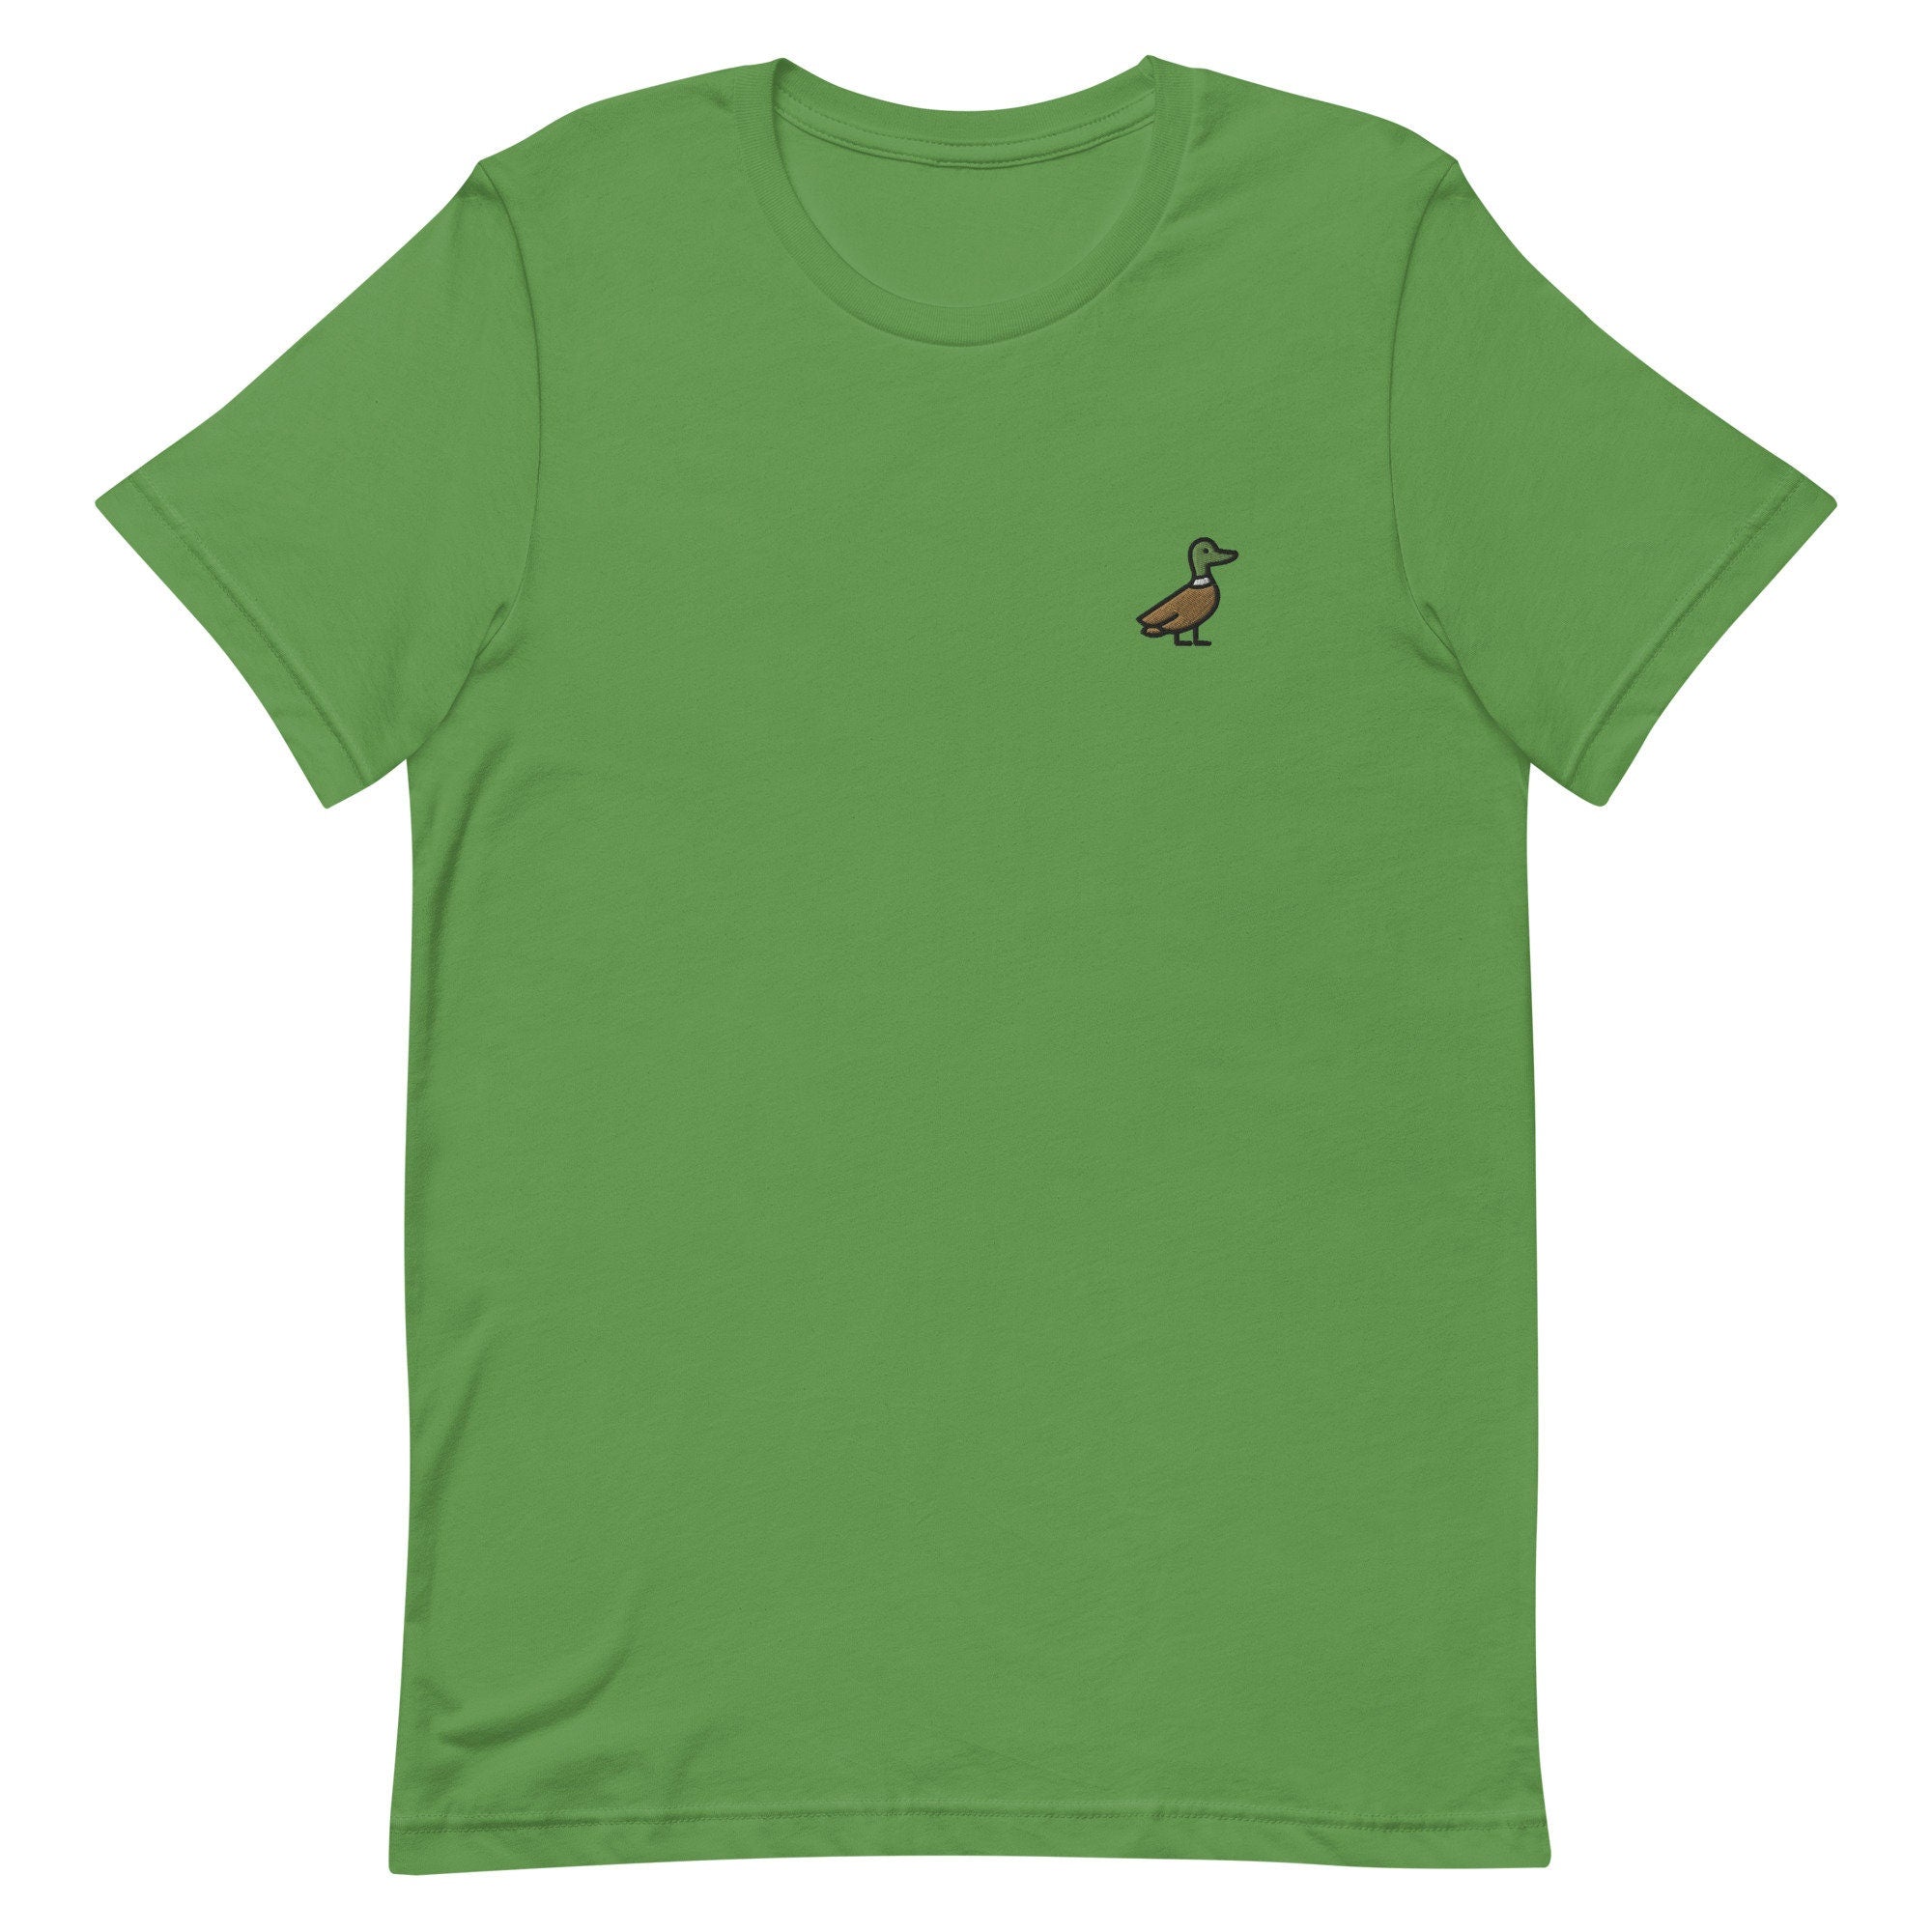 Duck Premium Men's T-Shirt, Embroidered Men's T-Shirt Gift for Boyfriend, Men's Short Sleeve Shirt - Multiple Colors